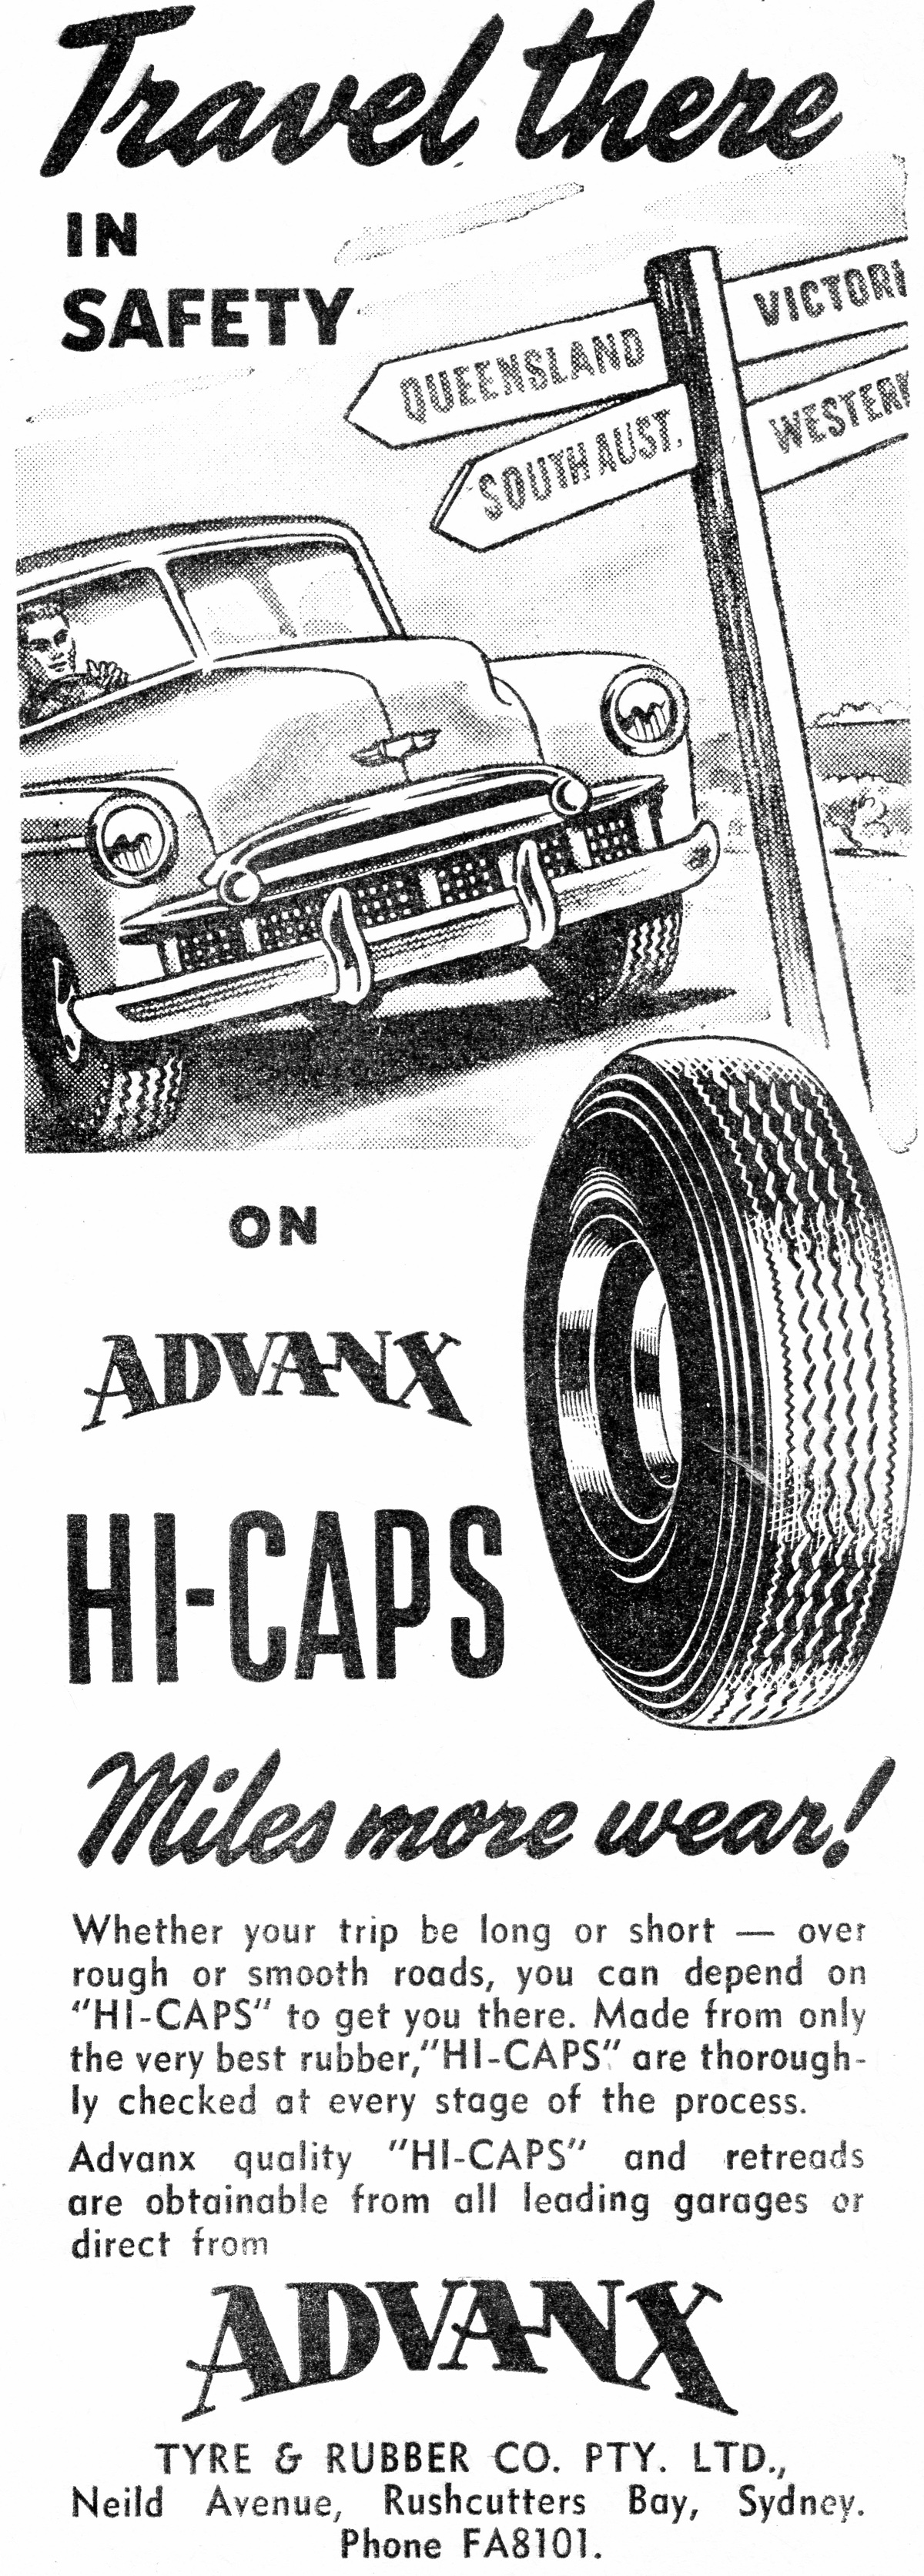 1954 Advanx Tyres